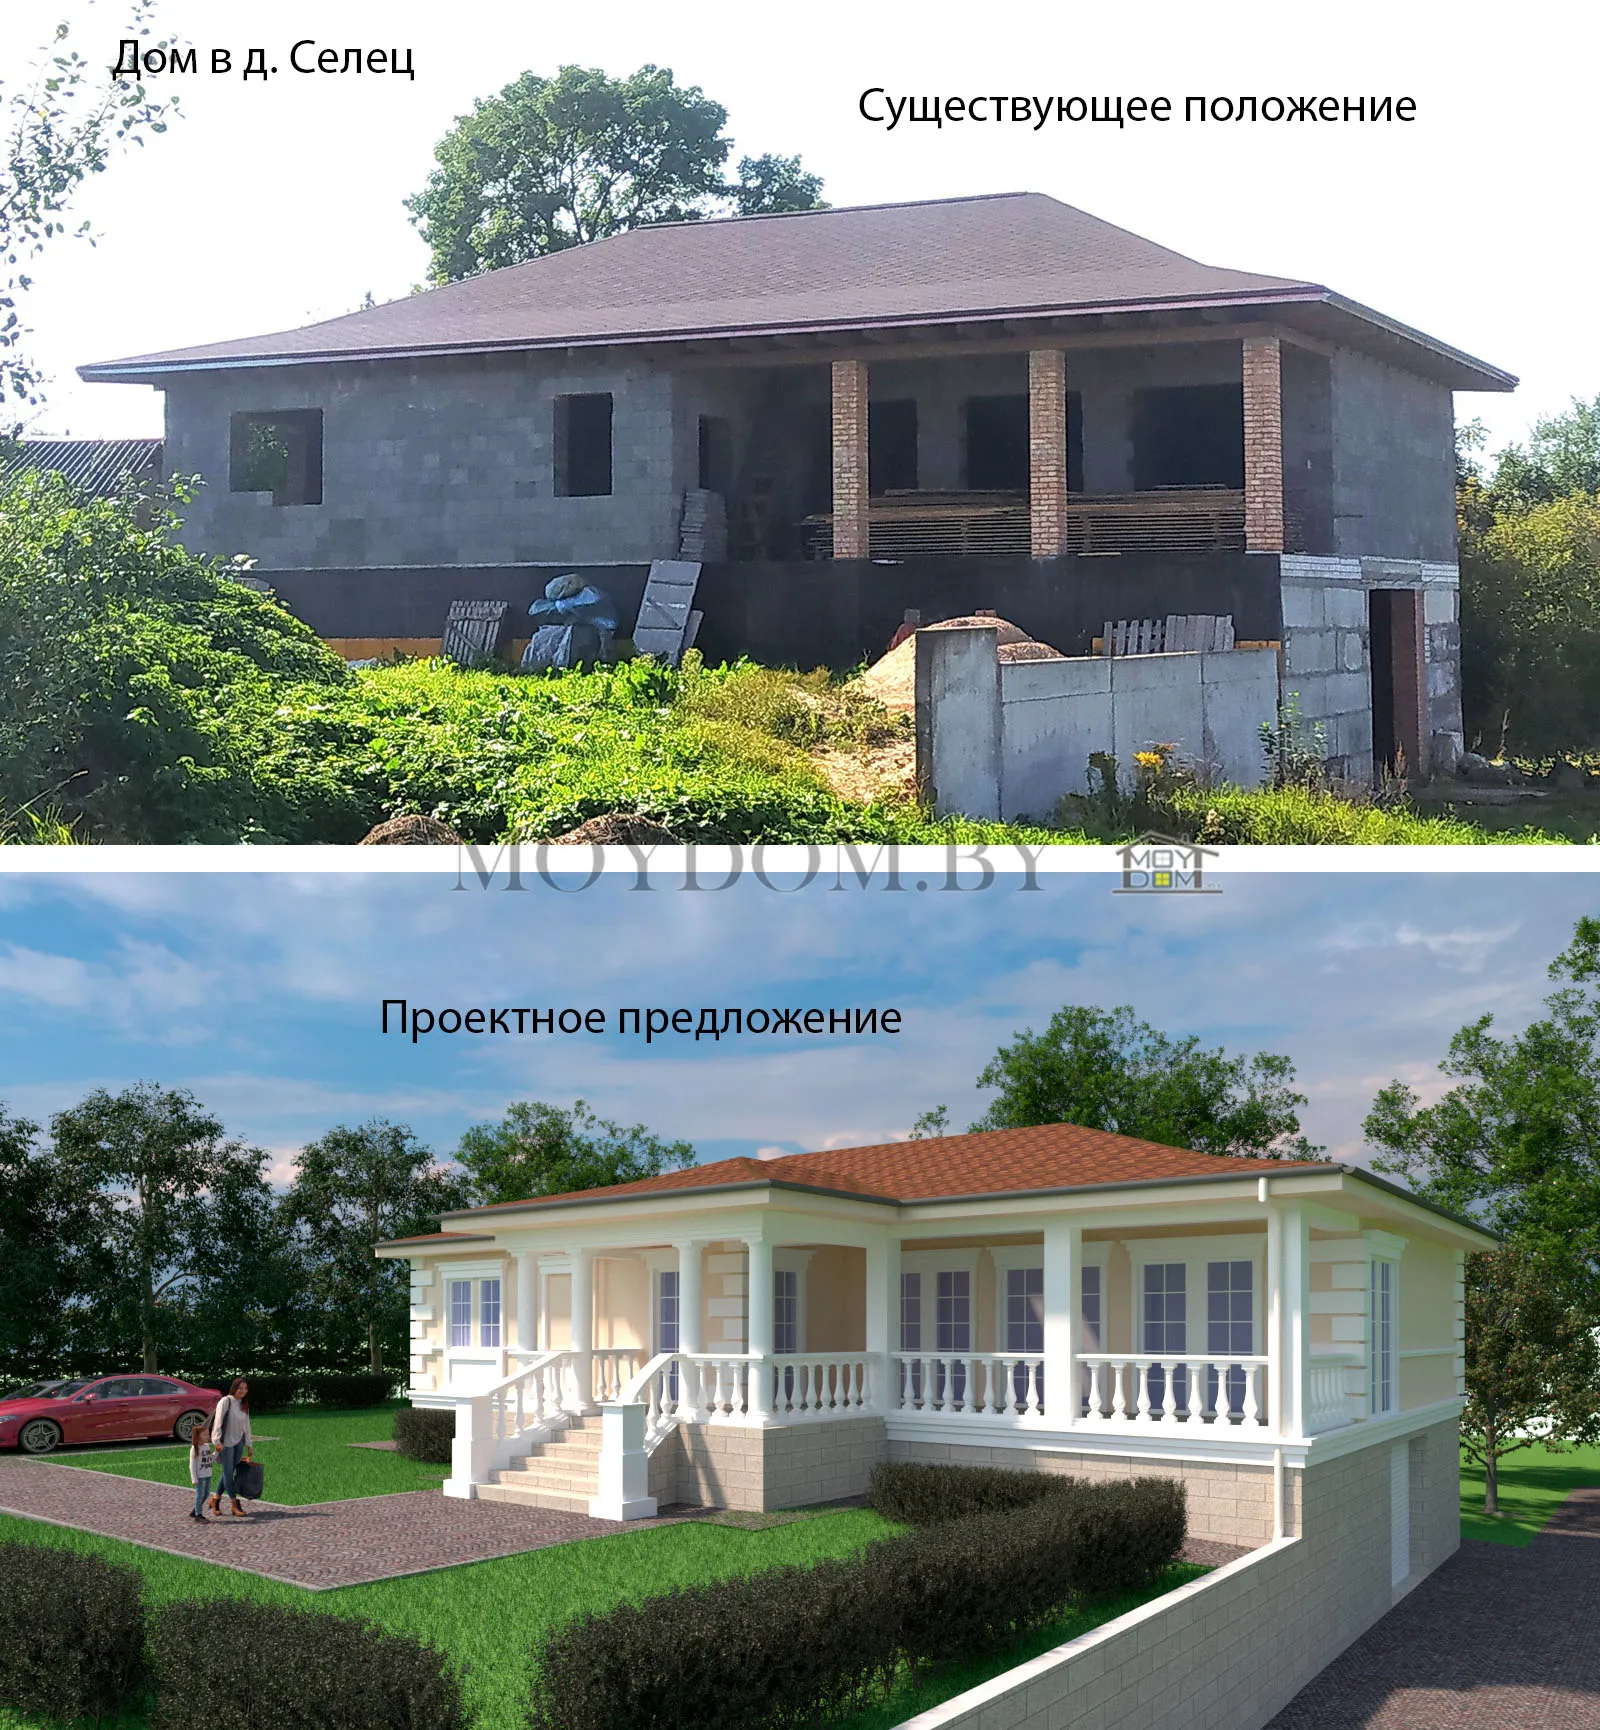 фото реконструкции и модернизации дома в классическом стиле